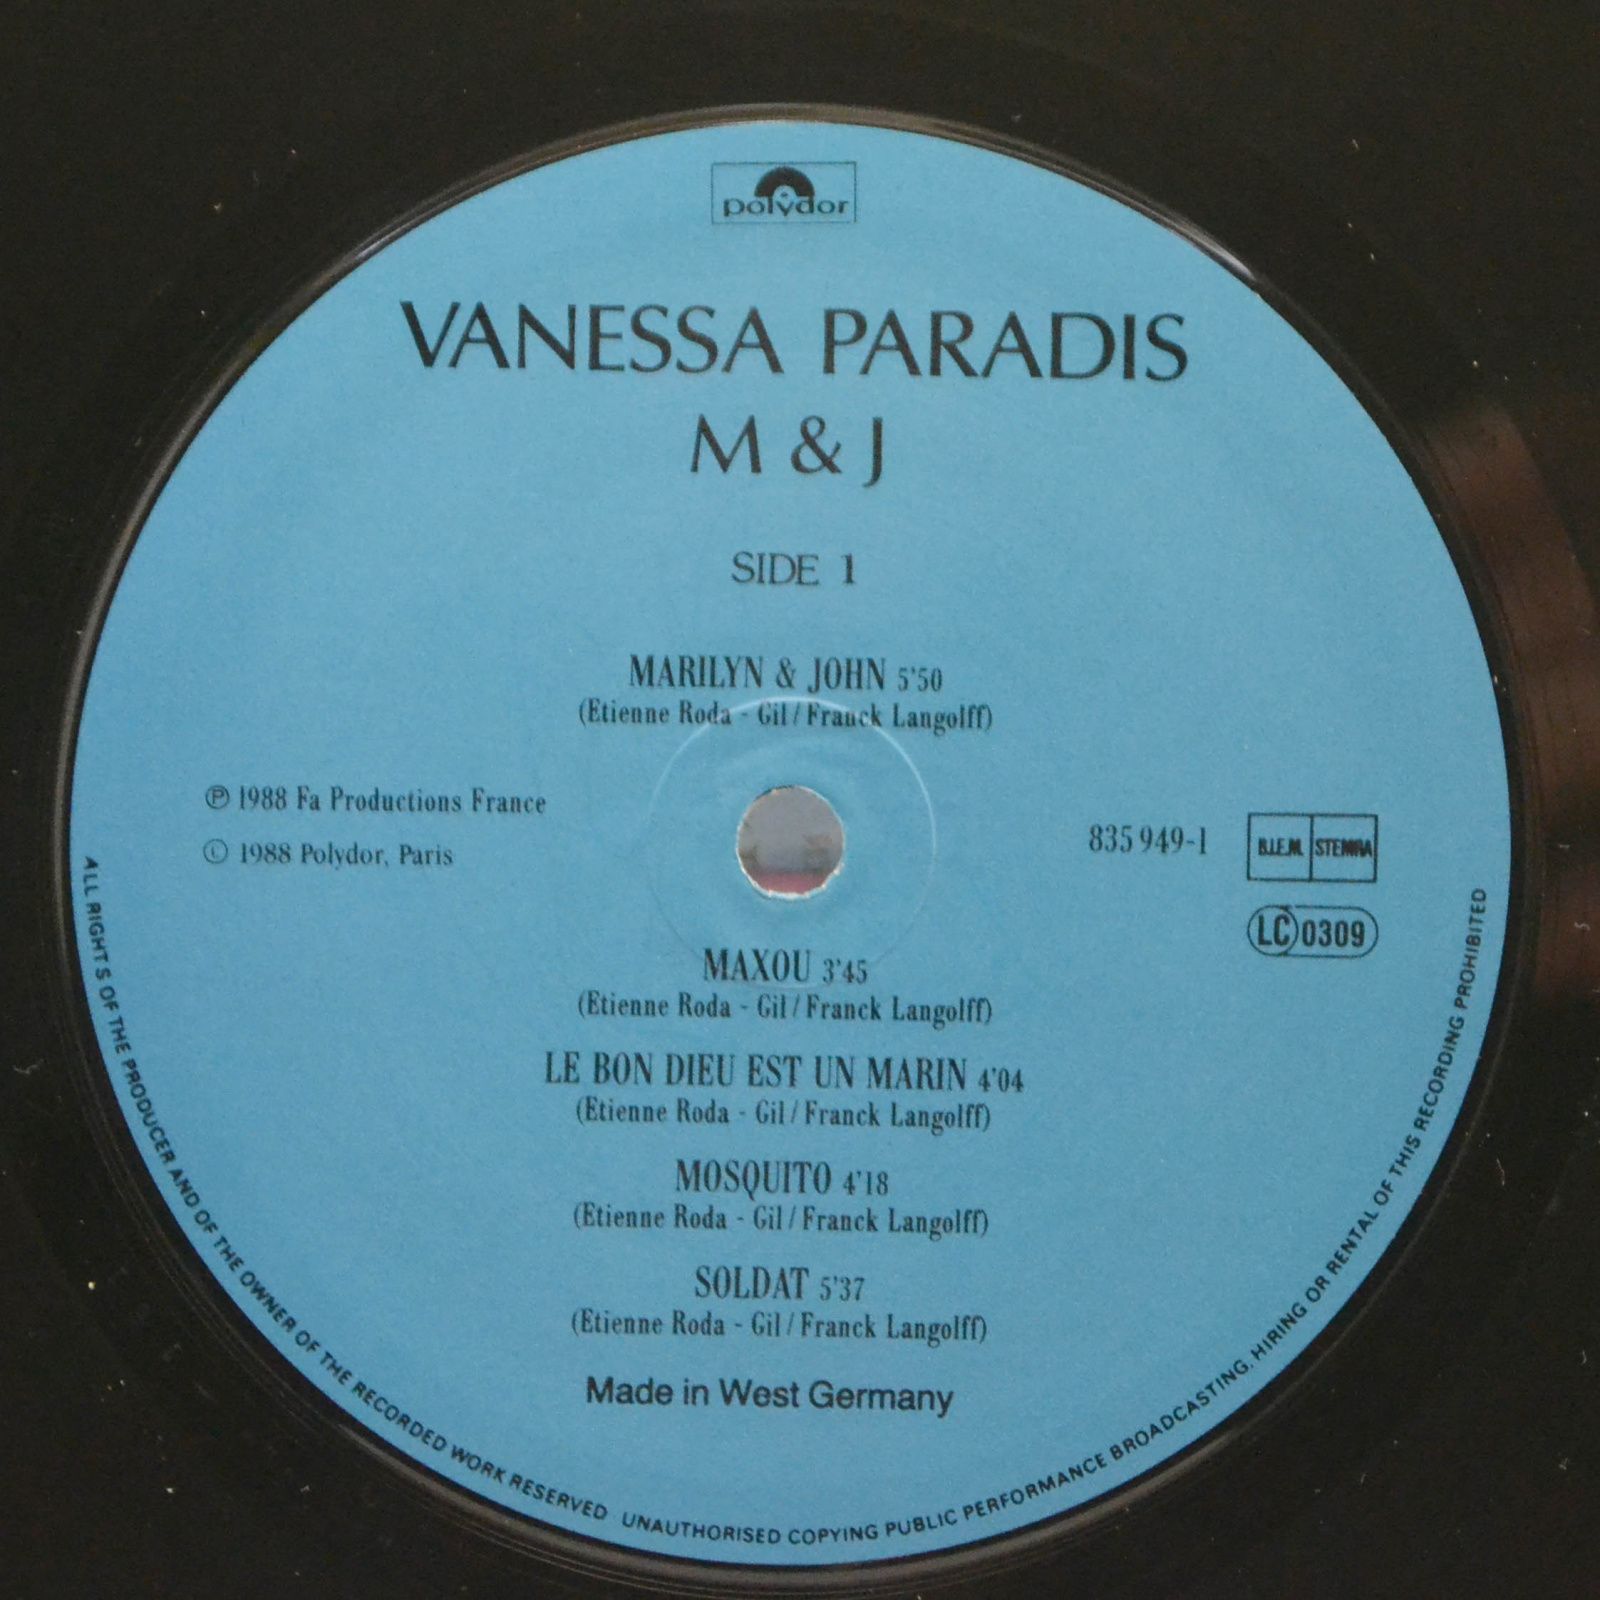 Vanessa Paradis — M & J, 1988